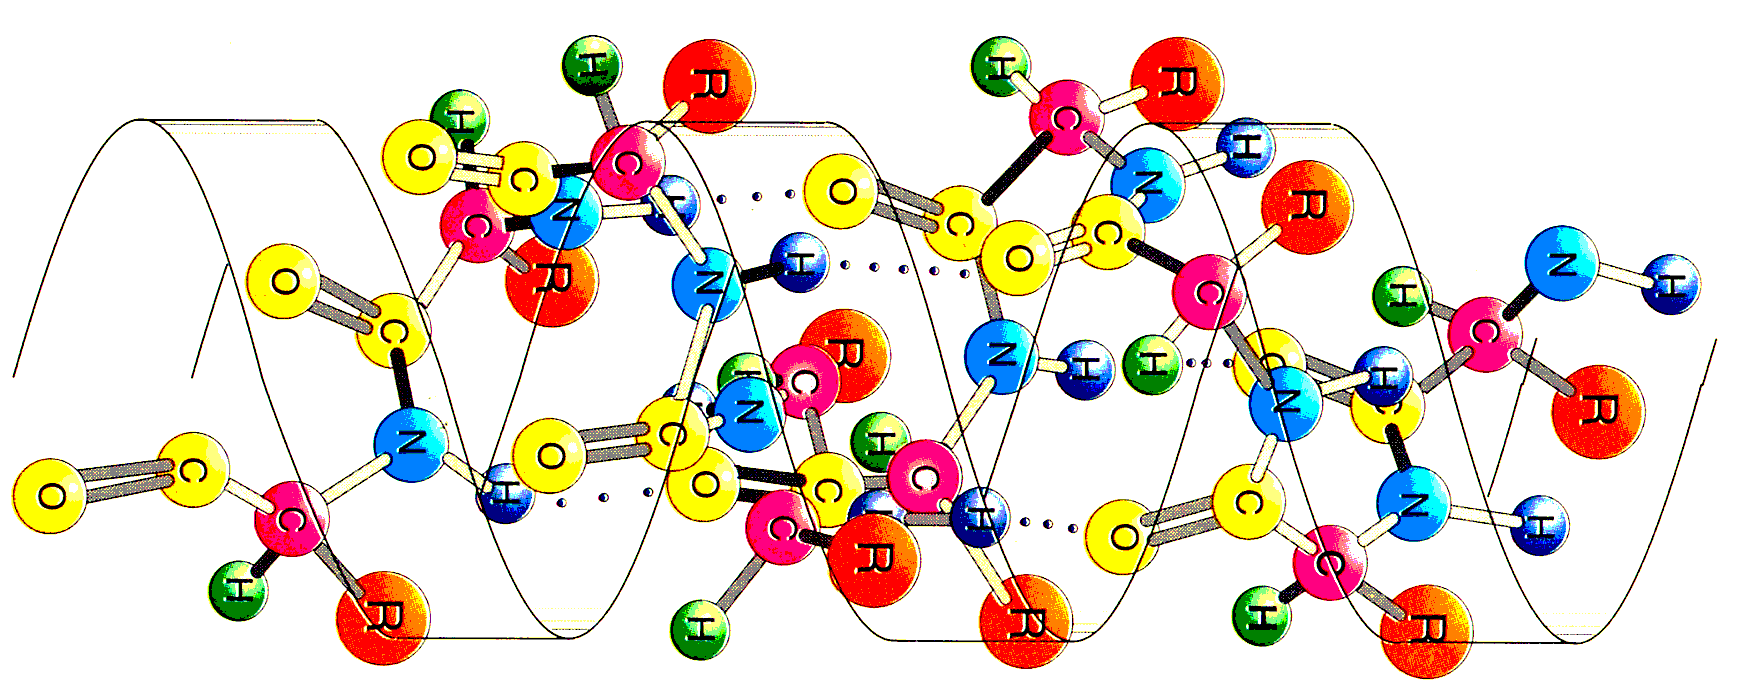 Describa los distintos niveles estructurales de las proteínas indicando los tipos de enlaces, interacciones y fuerzas que las estabilizan [1,5].